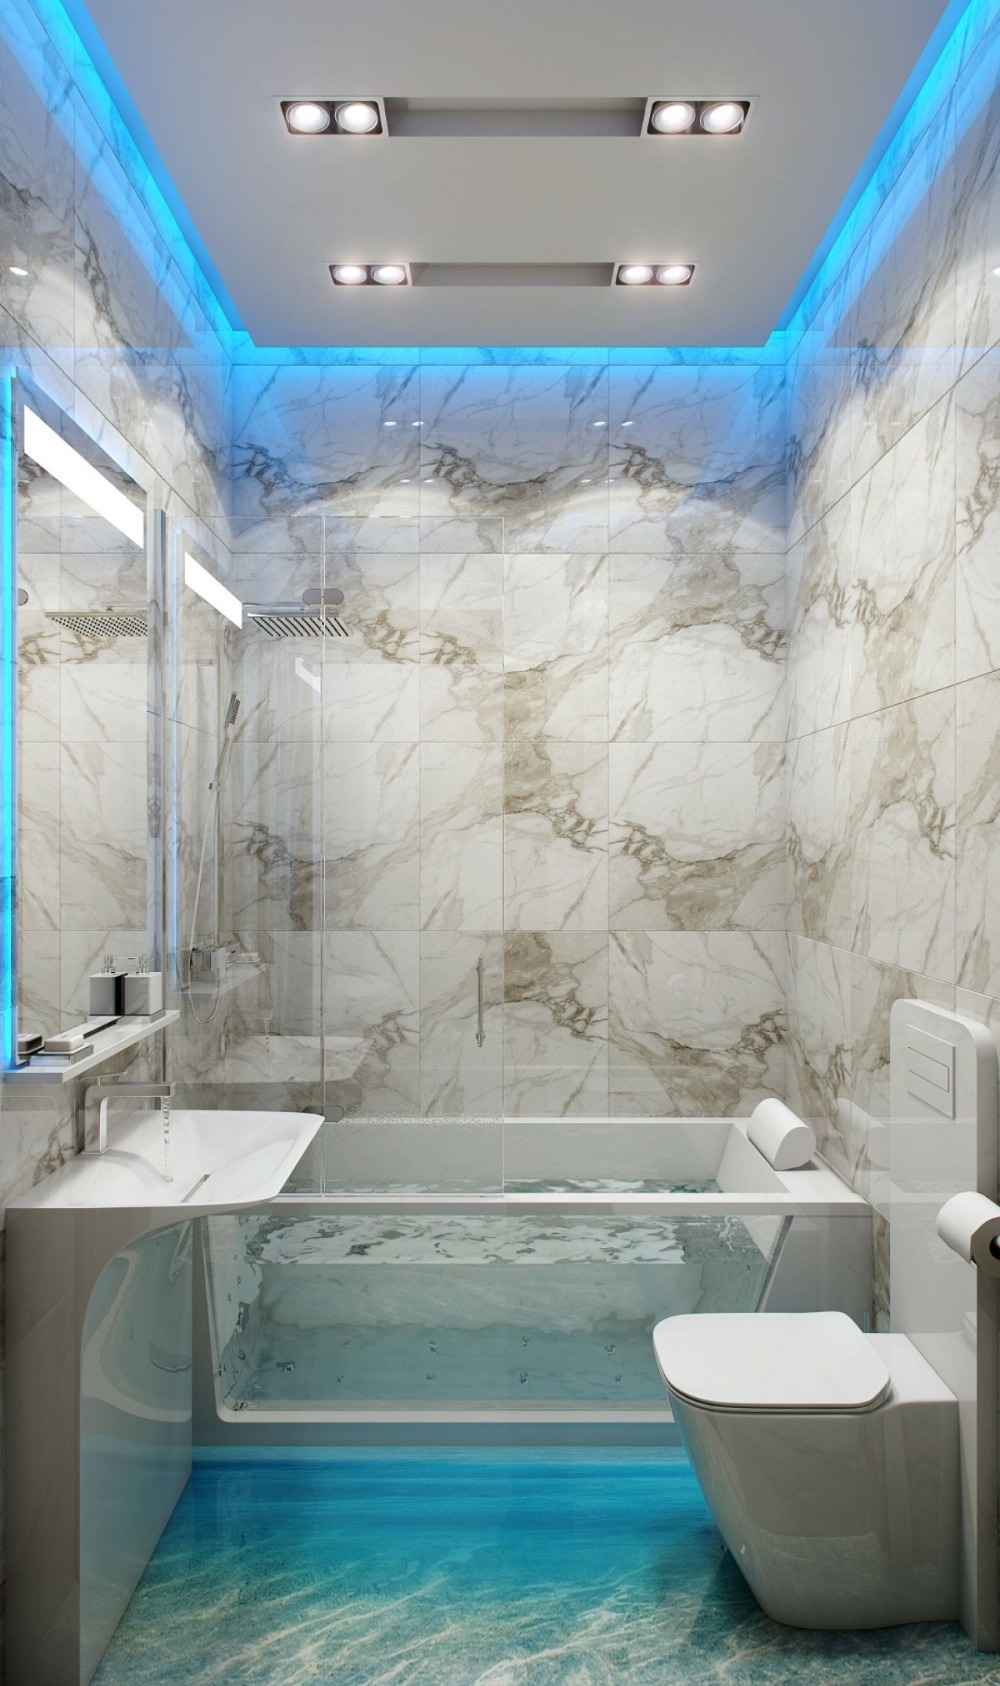 الحمام المبلط الضوء الأزرق غير المباشر إضاءة السقف شفافة